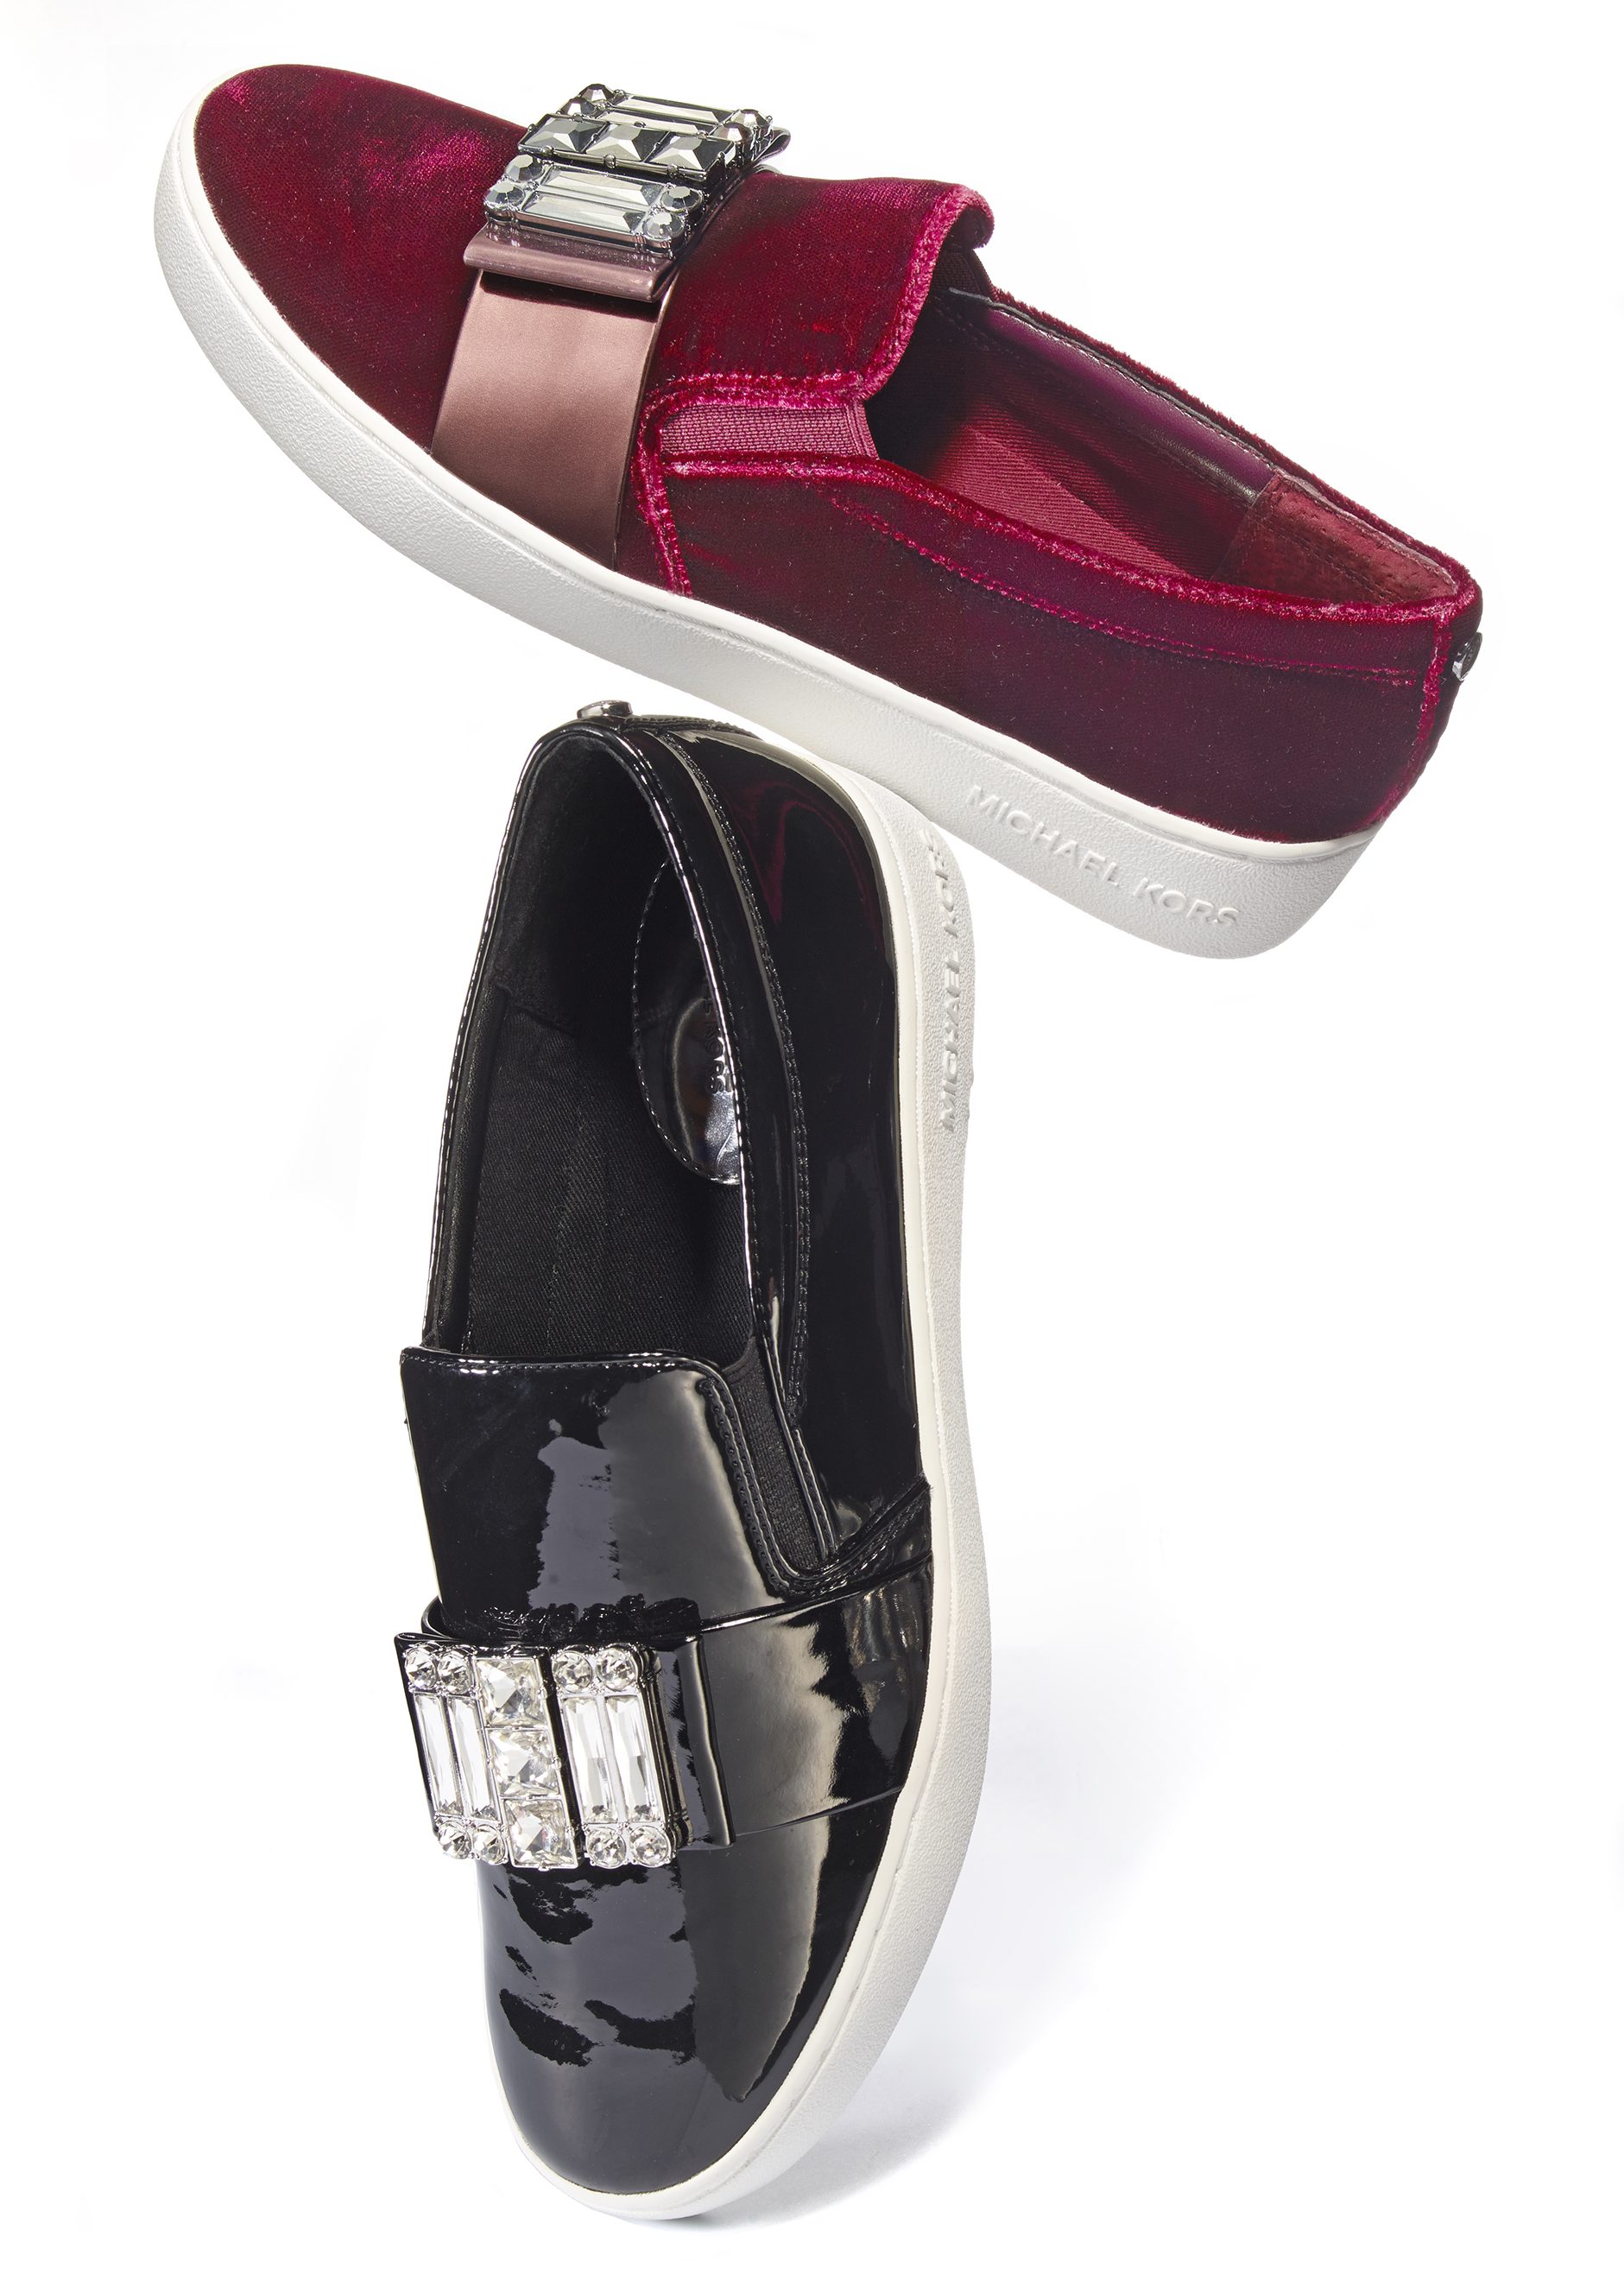 Zapatos 'loafer' presentados por la compañía Michael_Kors. Costo: $160